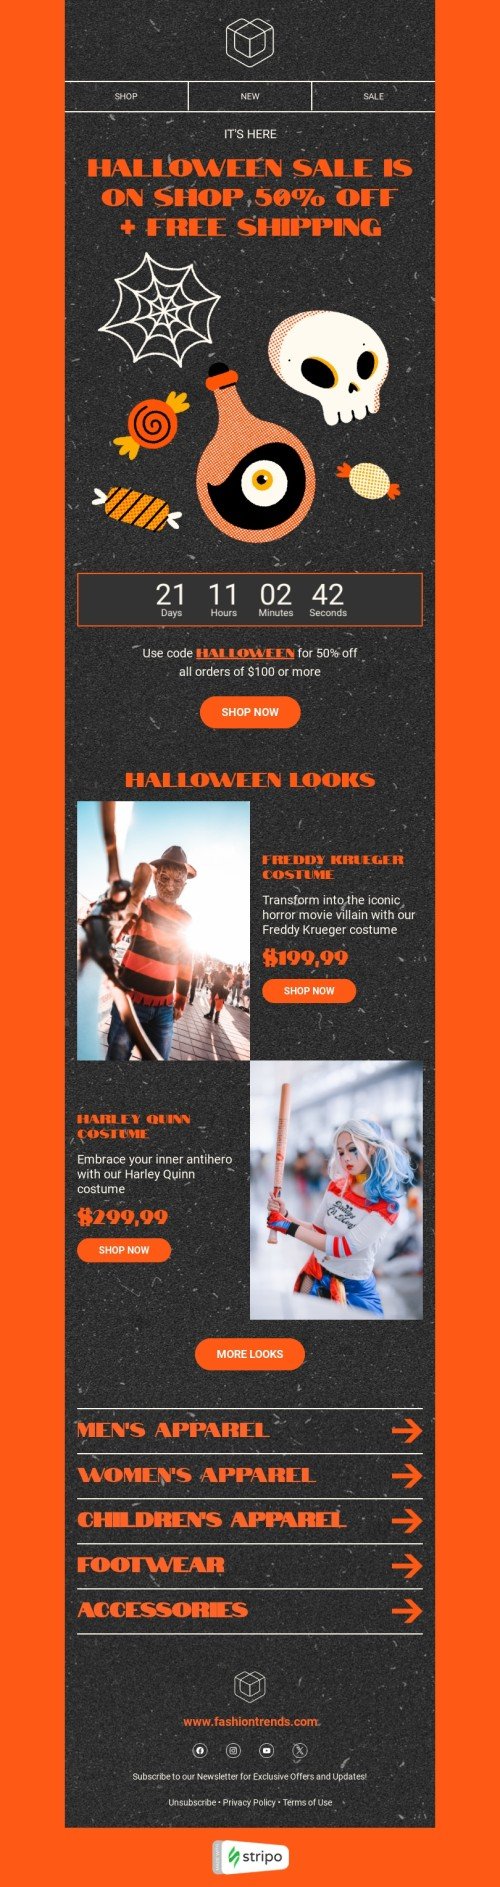 Plantilla de correo electrónico «Looks de Halloween» de Halloween para la industria de moda Vista de móvil